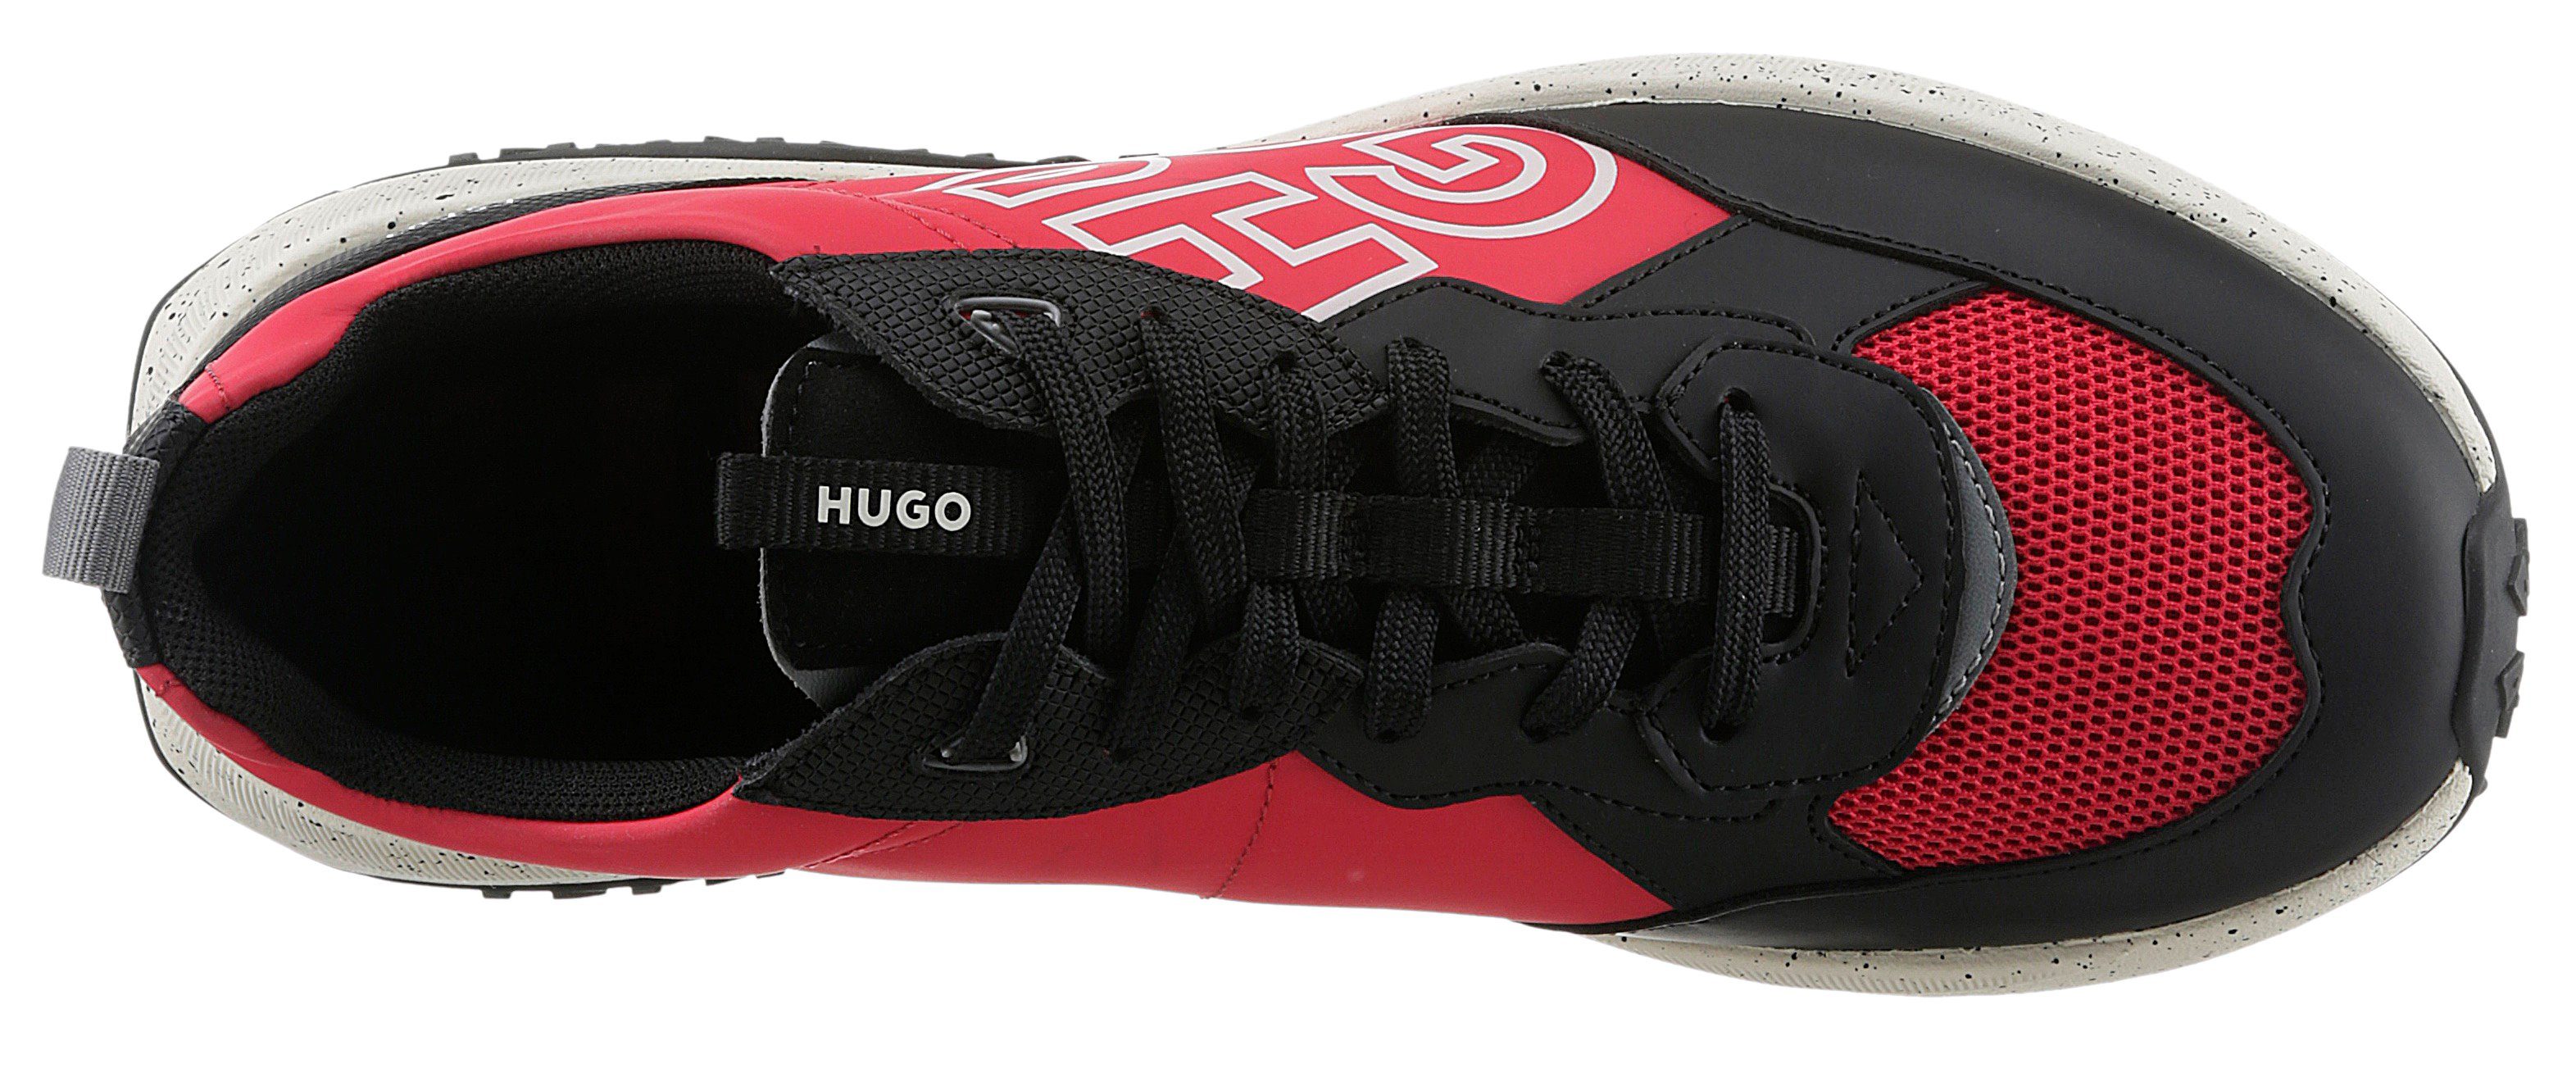 Sneaker Kane_Runn rot-schwarz auffälligem mit HUGO Logoschriftzug